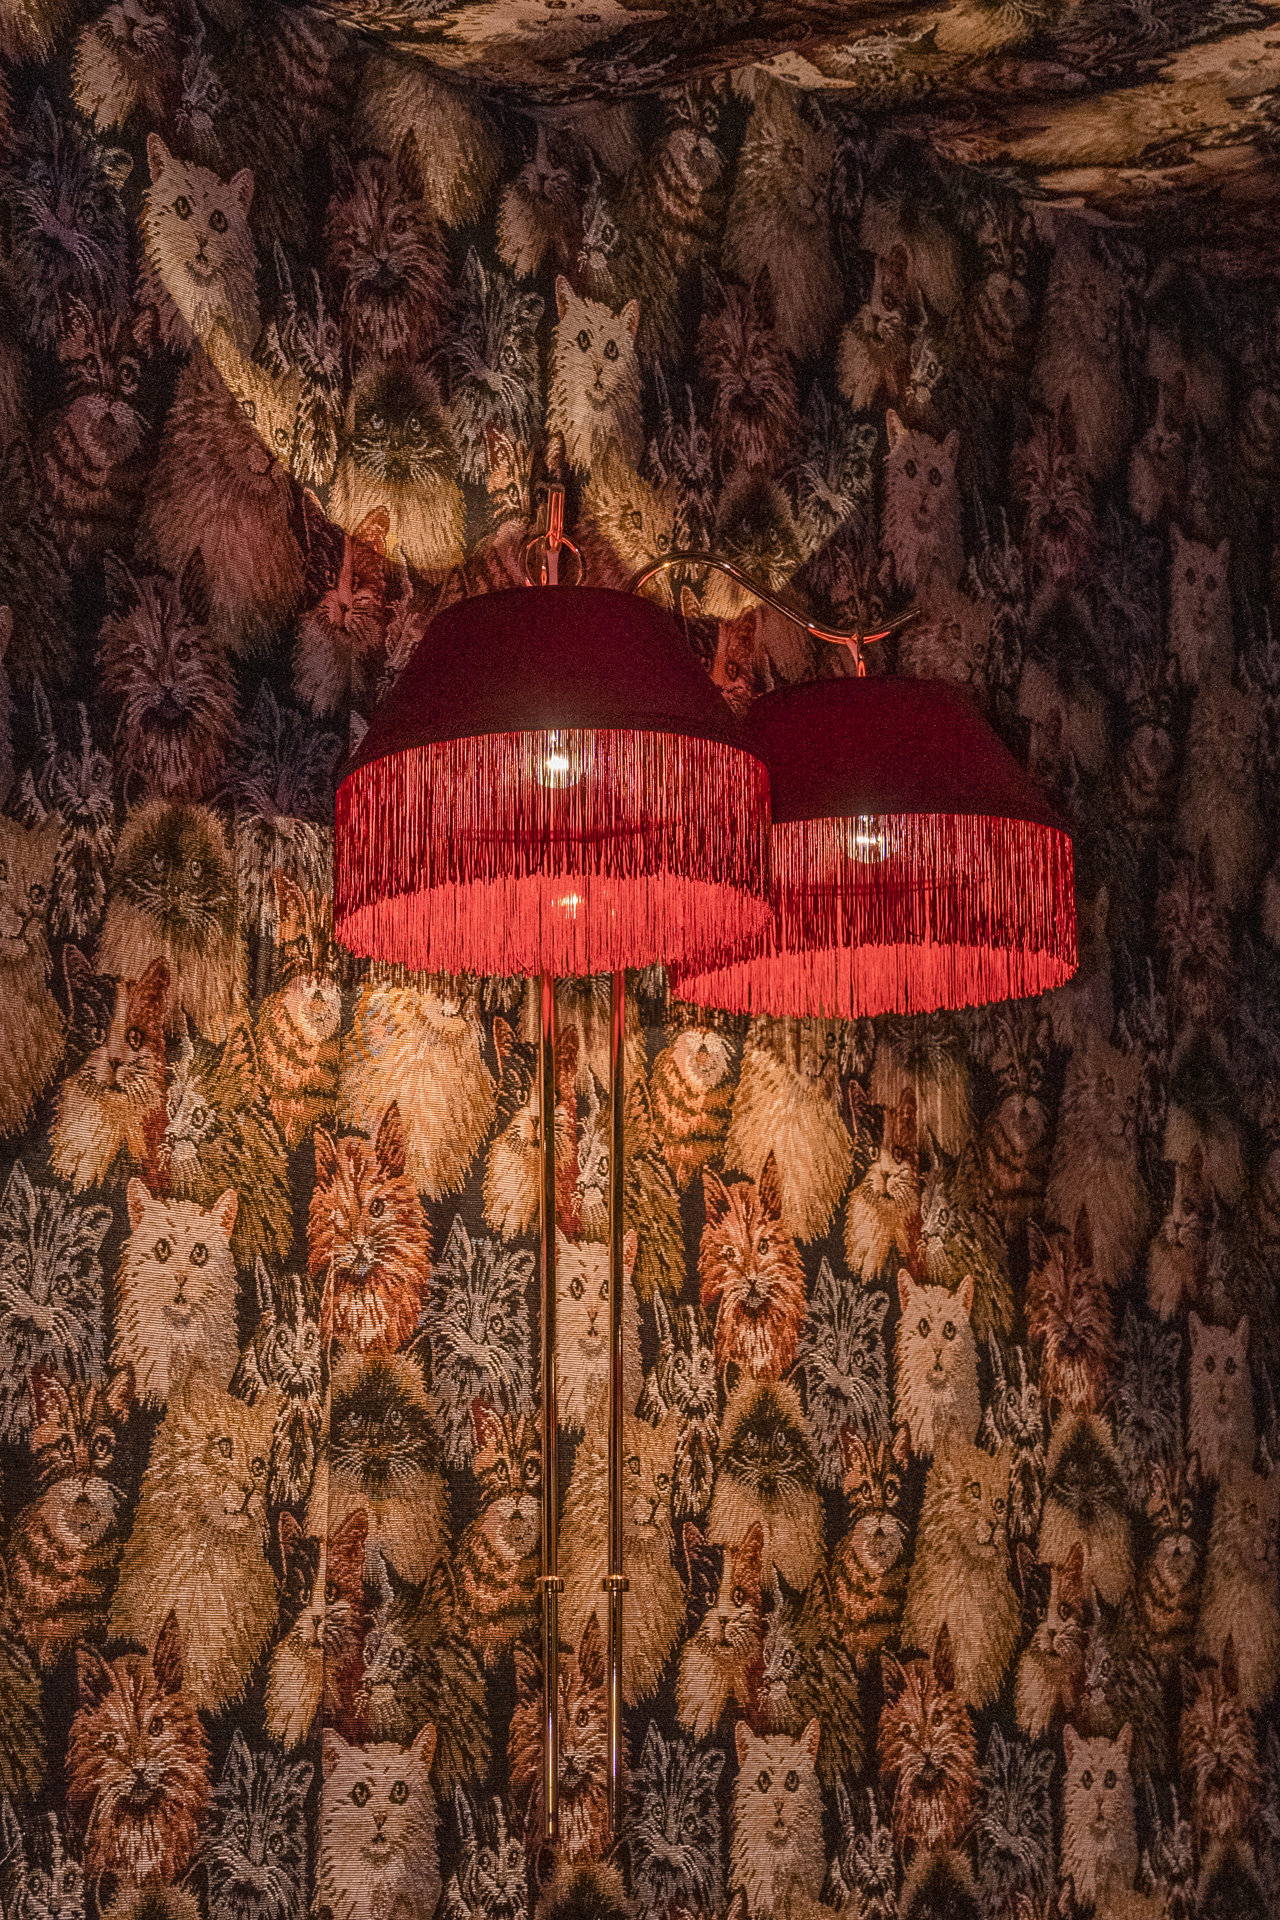 Las hollywoodienses lámparas están fabricadas en Valencia, y se han adaptado con un diseño propio del estudio. Entre el japonismo y lo retro, el terciopelo rojo y los flecos, se crea el ambiente perfecto para la conversación y el disfrute.